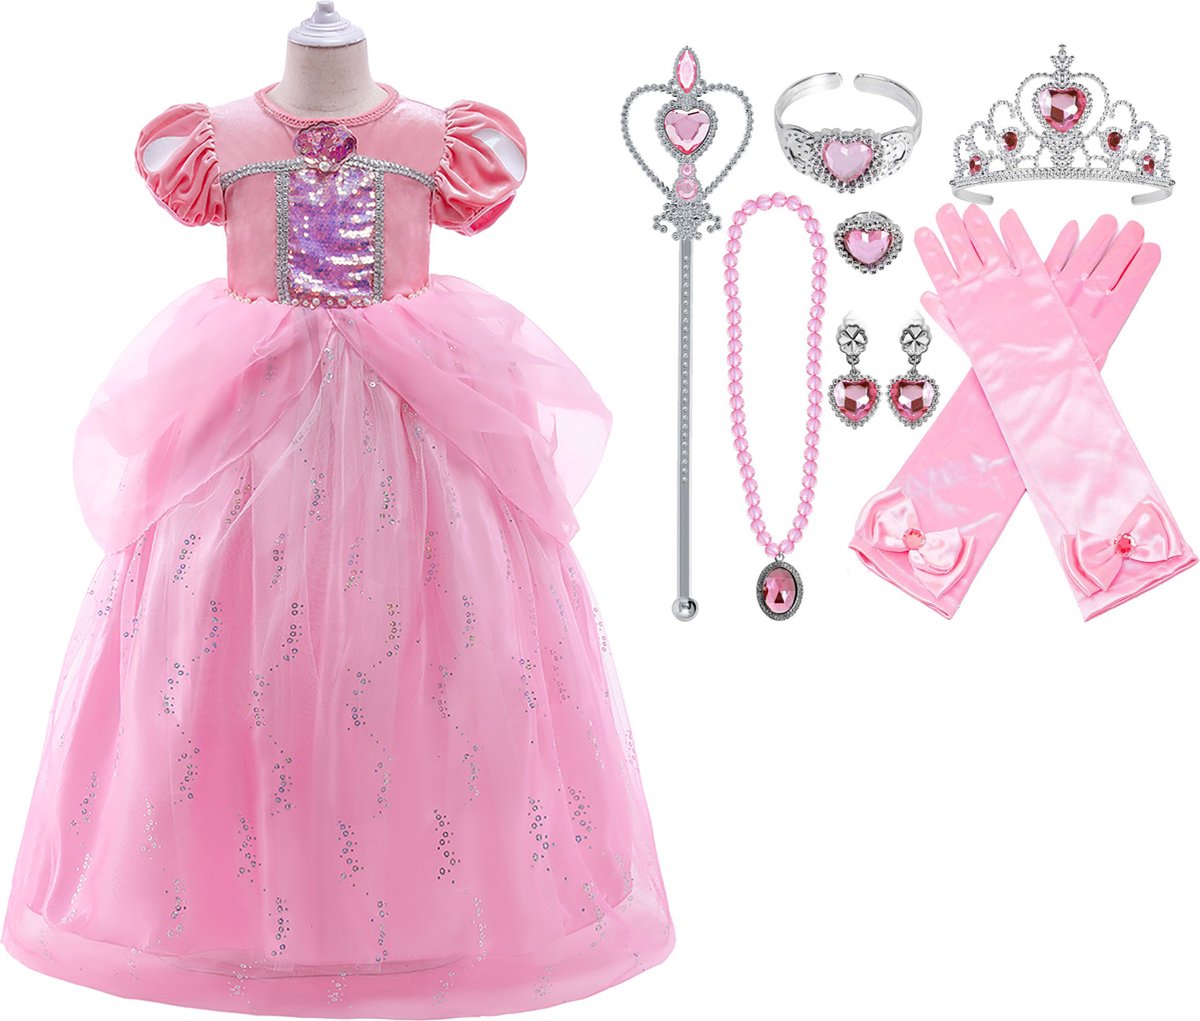 Prinsessenjurk meisje - Prinses Ariel - Roze - 134/140 + Tiara (Kroon) / Toverstaf + Juwelen + Handschoenen - Zeemeermin verkleedkleren